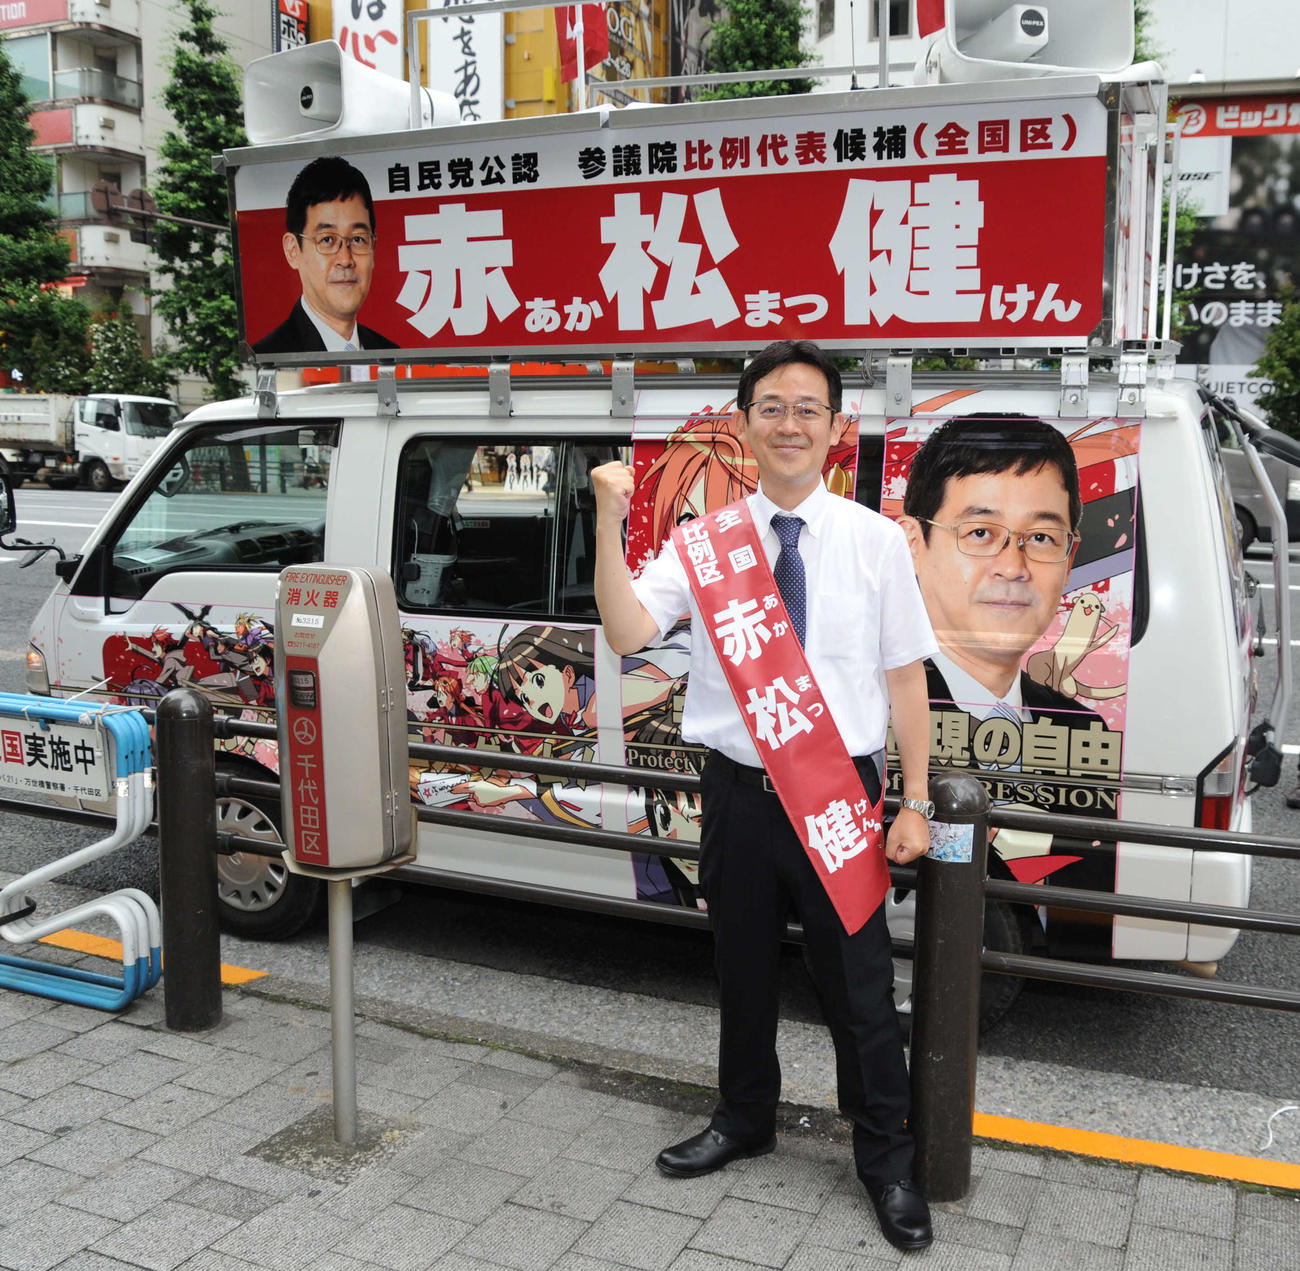 自身の作品キャラクターで装飾した選挙カーで街宣活動を行った漫画家の赤松健氏（撮影・松尾幸之介）